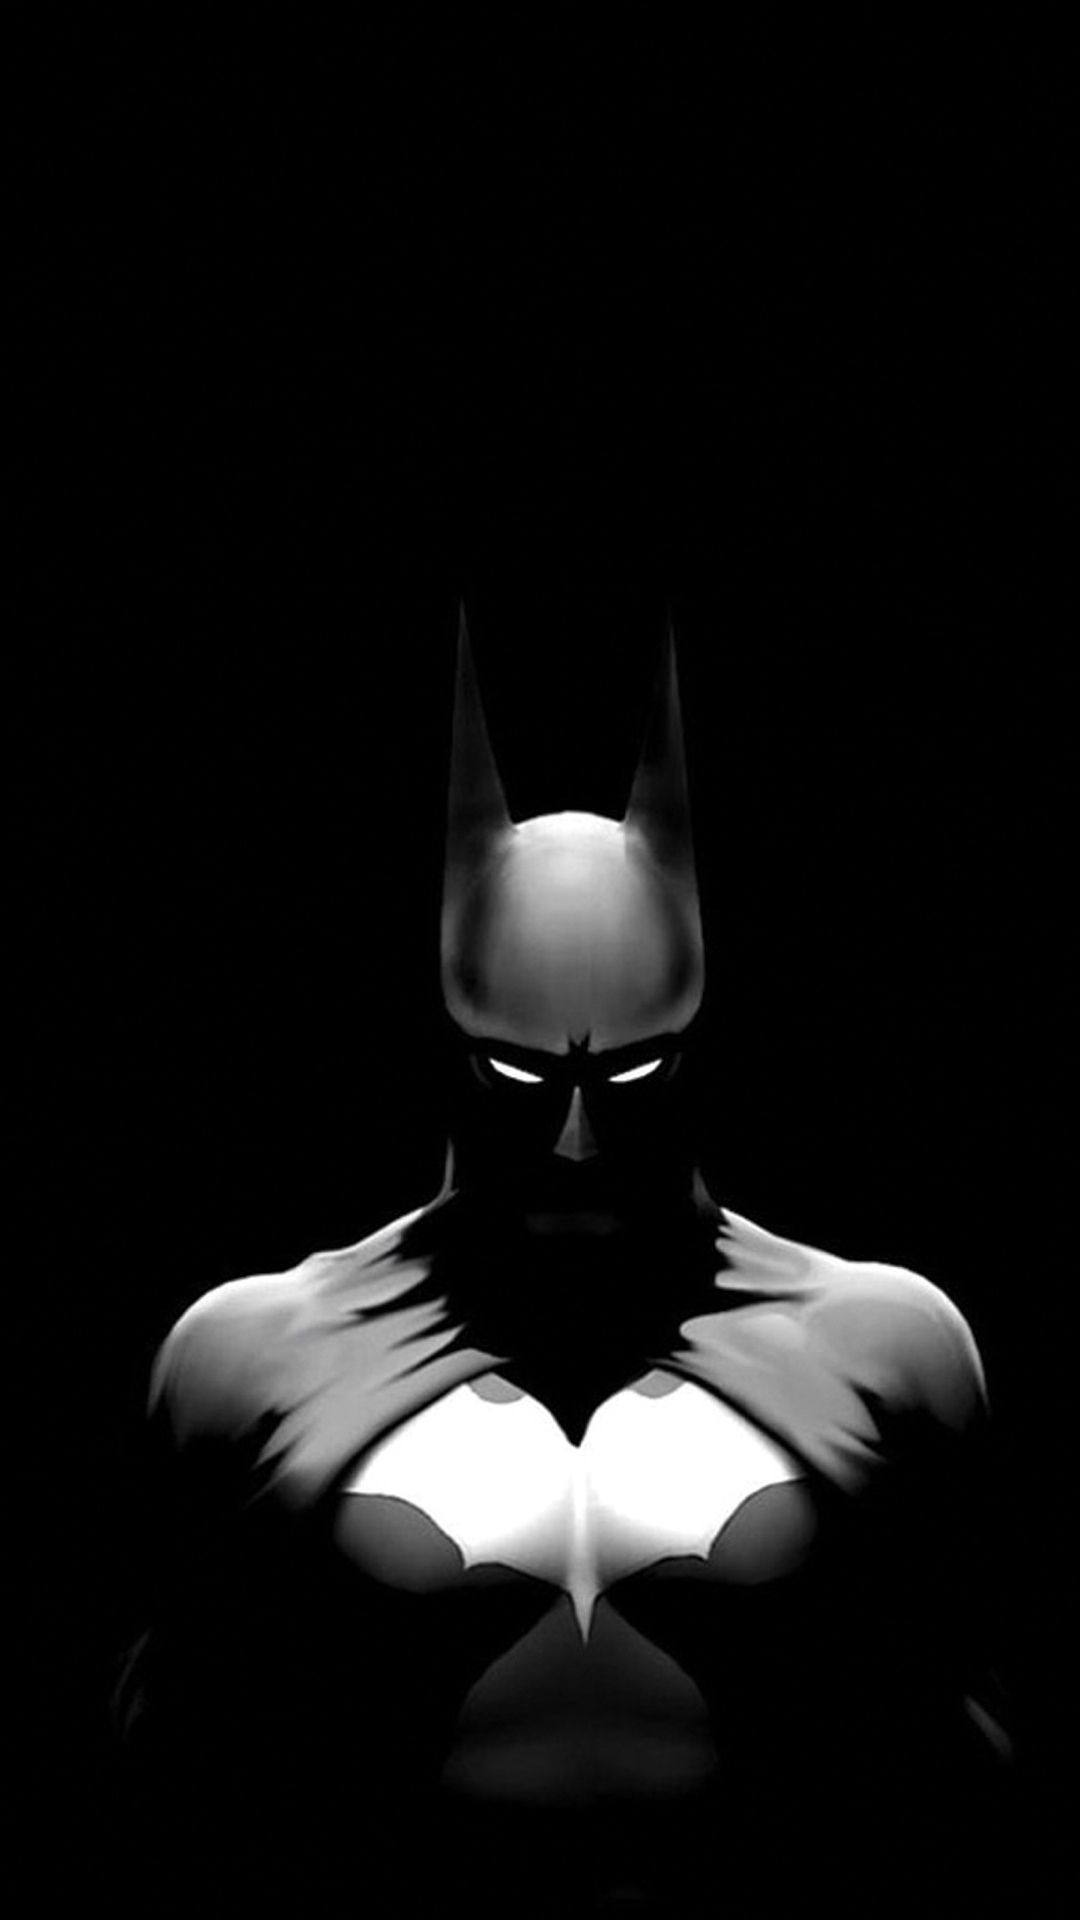 s7 edge fondo de pantalla hd,hombre murciélago,fotografía de naturaleza muerta,oscuridad,personaje de ficción,superhéroe